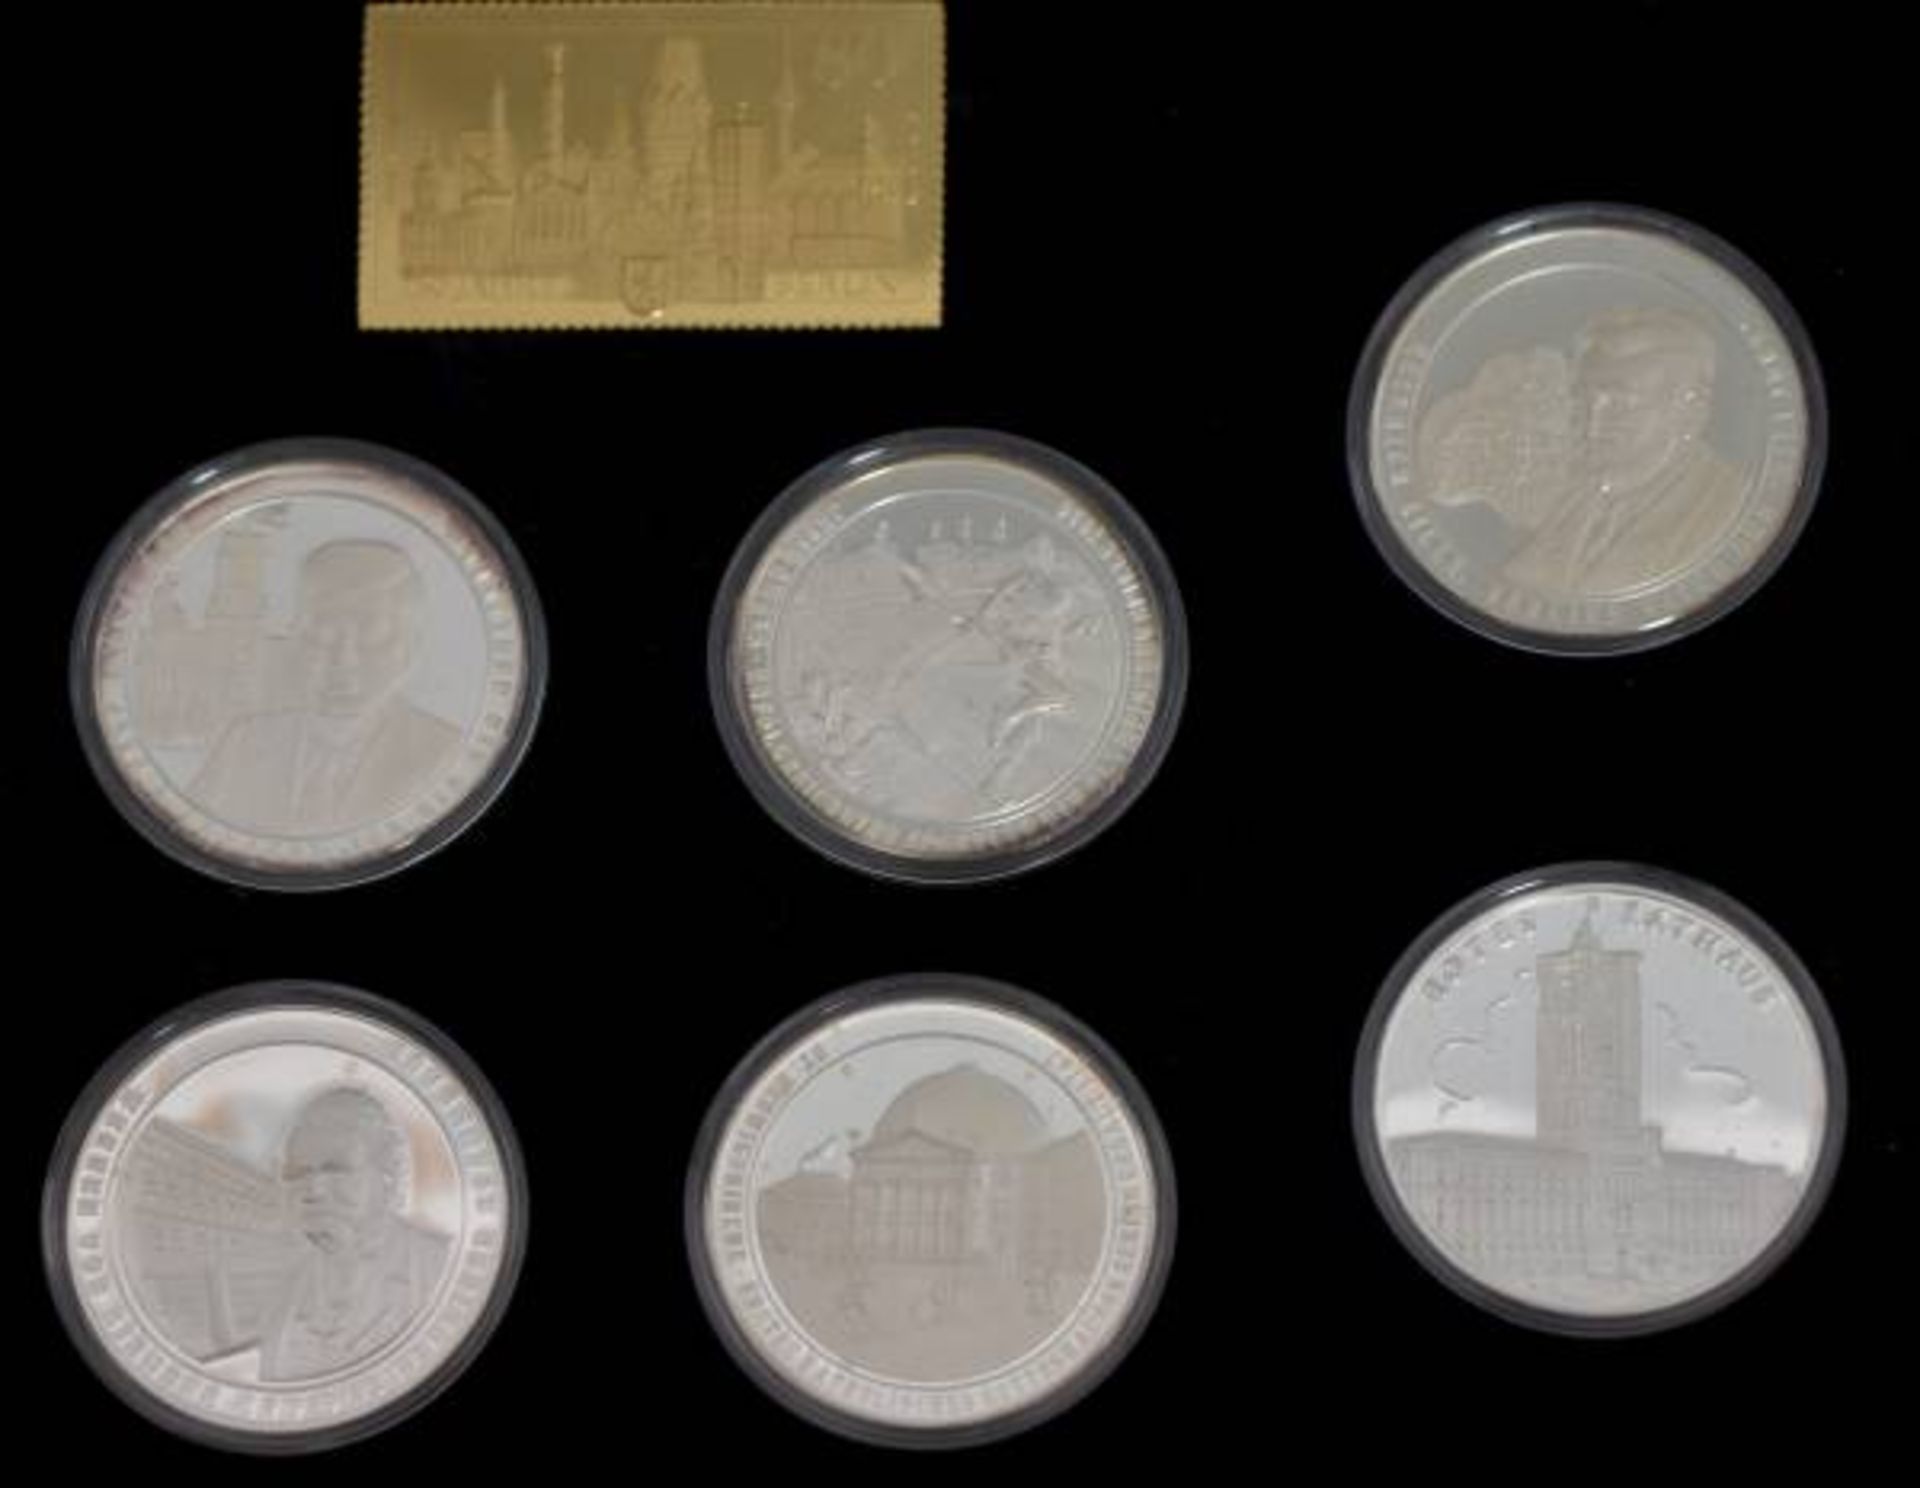 GEDENKMÜNZEN 750 JAHRE BERLIN Silbermedaillensammlung, 24 Medaillen, Feinsilber 999/1000, D 40 mm, - Bild 3 aus 3